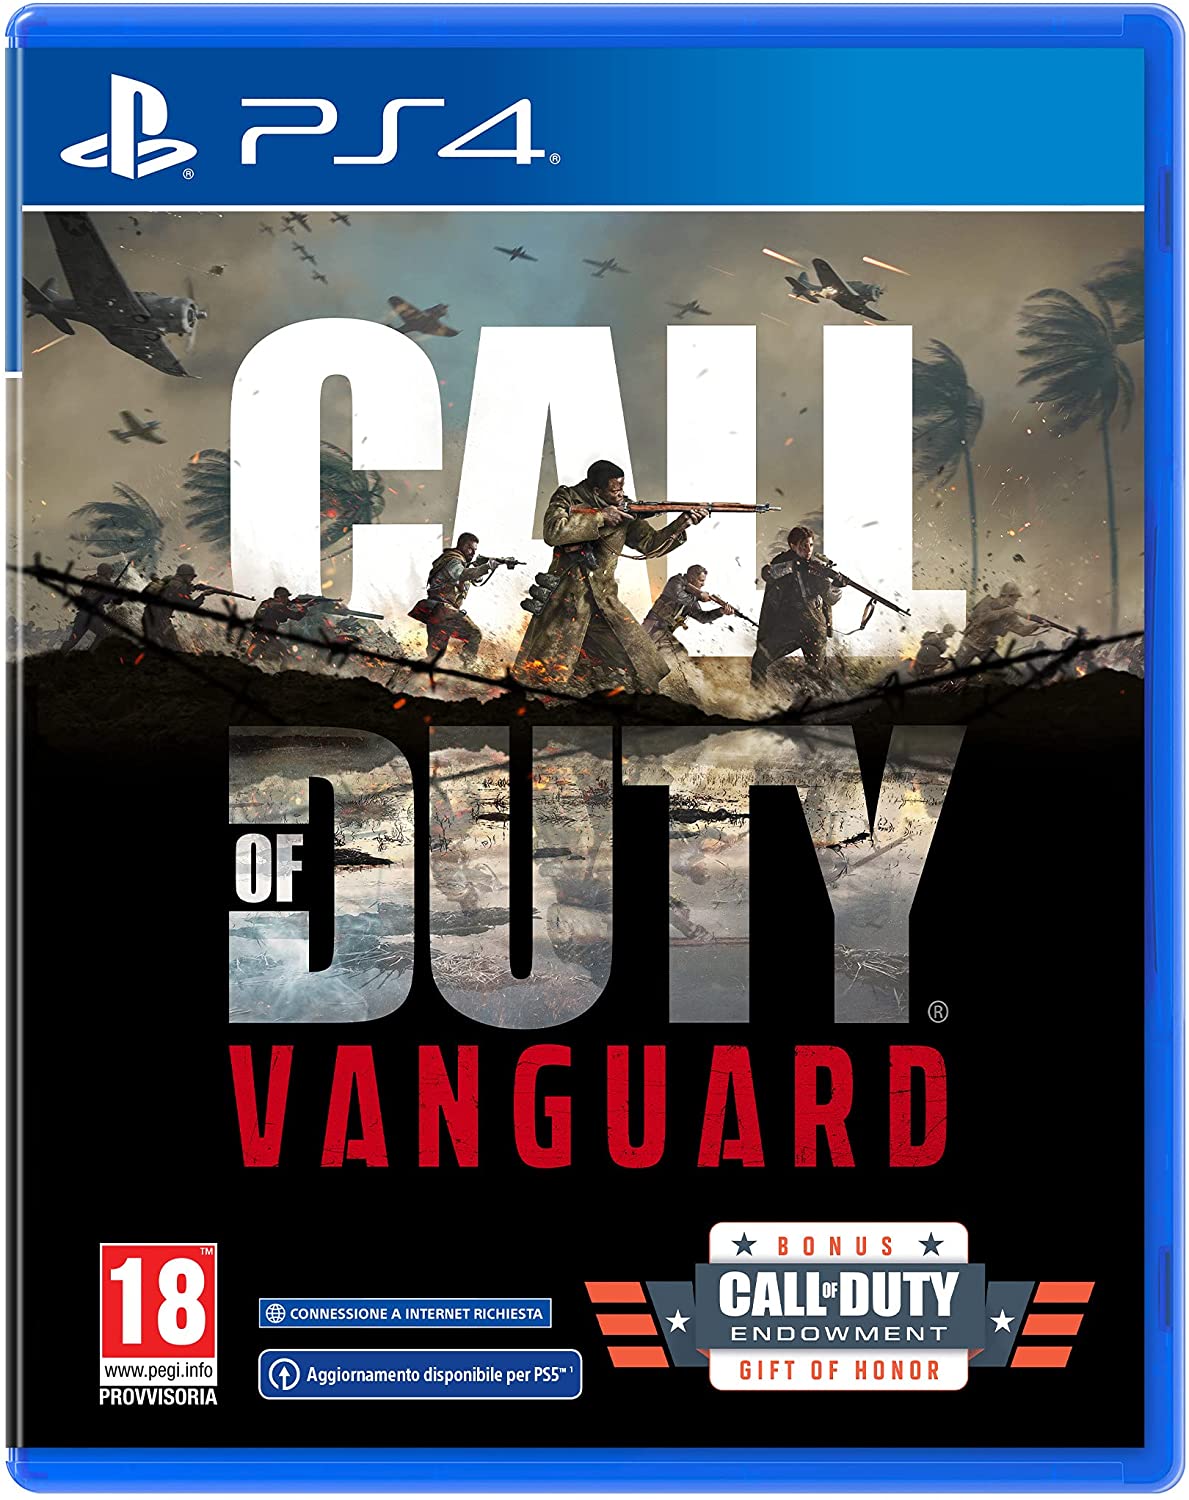 
                                    
                                Call of Duty Vanguard, la recensione: un'esperienza cinematica e poco altro